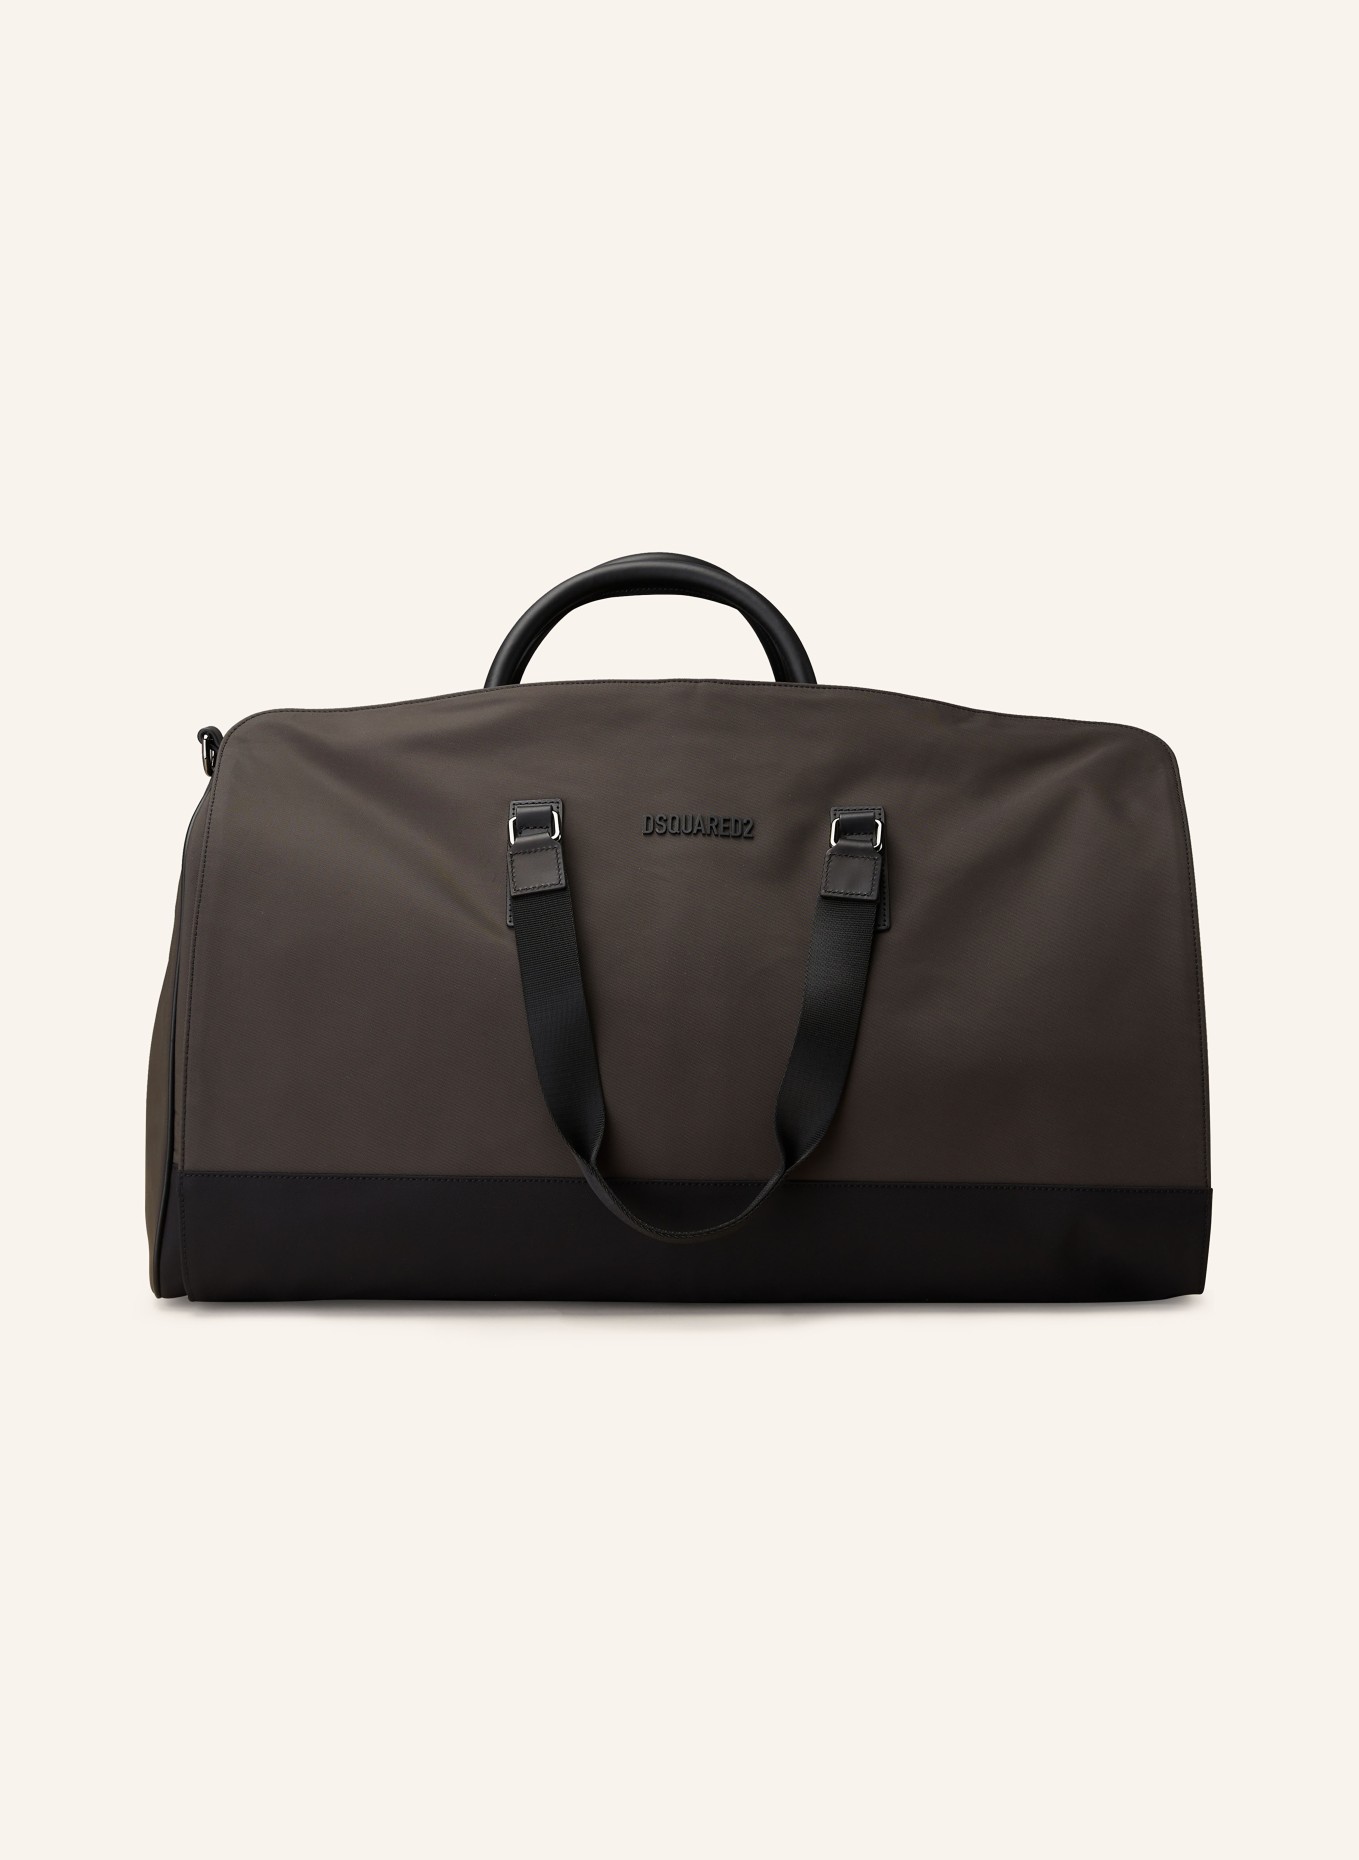 DSQUARED2 Travel bag, Color: KHAKI/ BLACK (Image 1)